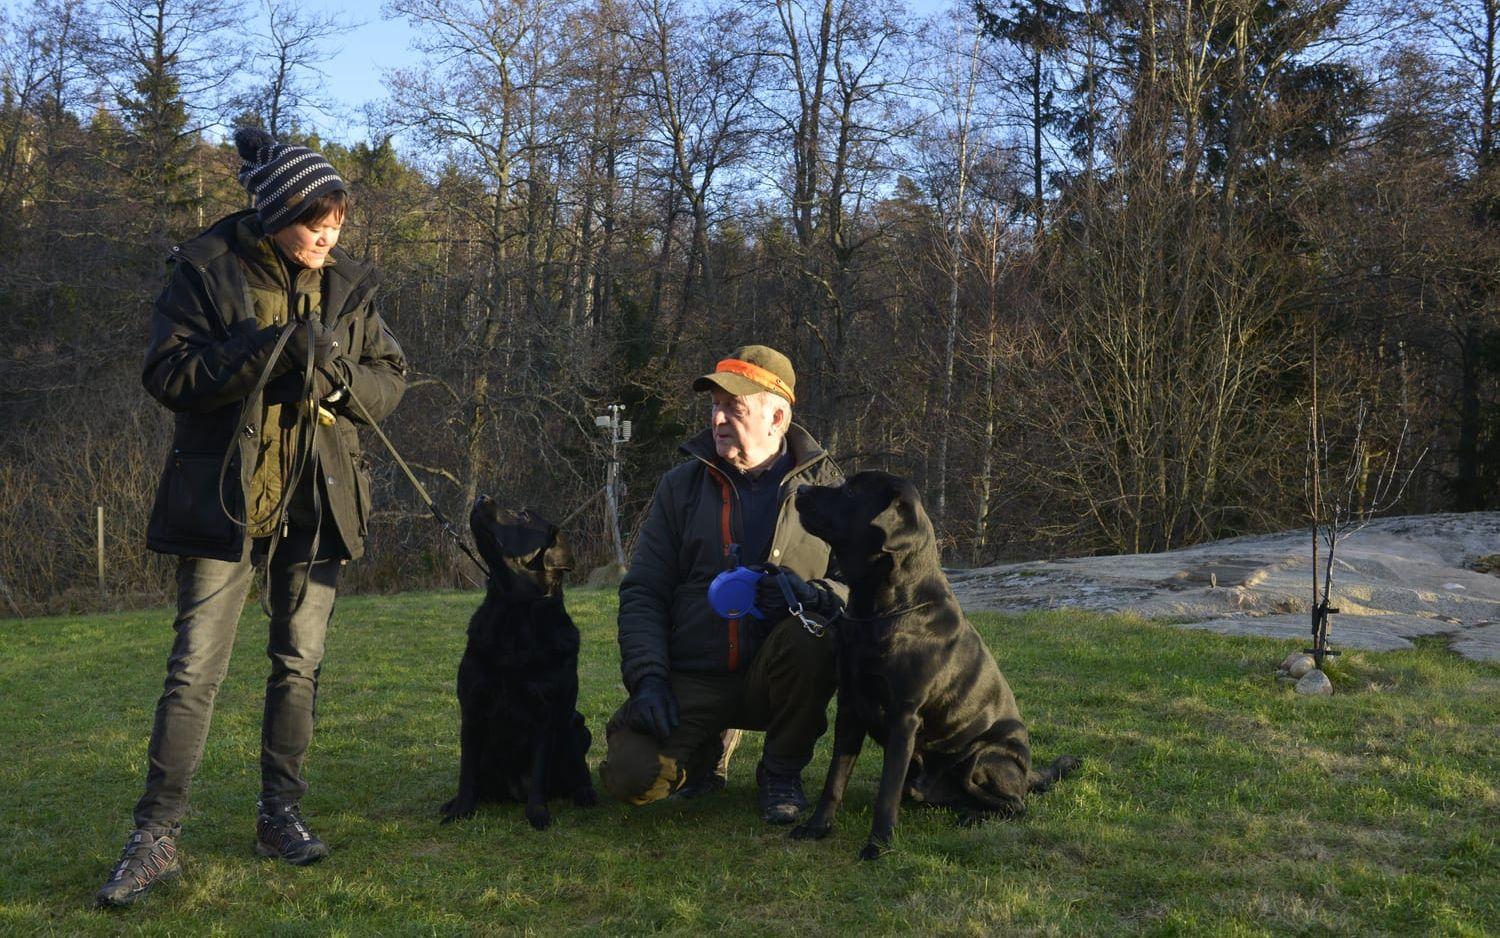 Kennelkonsulenterna Anna Billing och Kent Prytz har träffat många hundar som skadats psykiskt av fyrverkerier. De efterlyser därför att de som ska skjuta nyårsraketer gör det ansvarsfullt, och meddelar hundägare. Deras egna hundar Bosse och Barbro bekymrar sig mest om lek och mat. Bild: Daniel Gustafsson